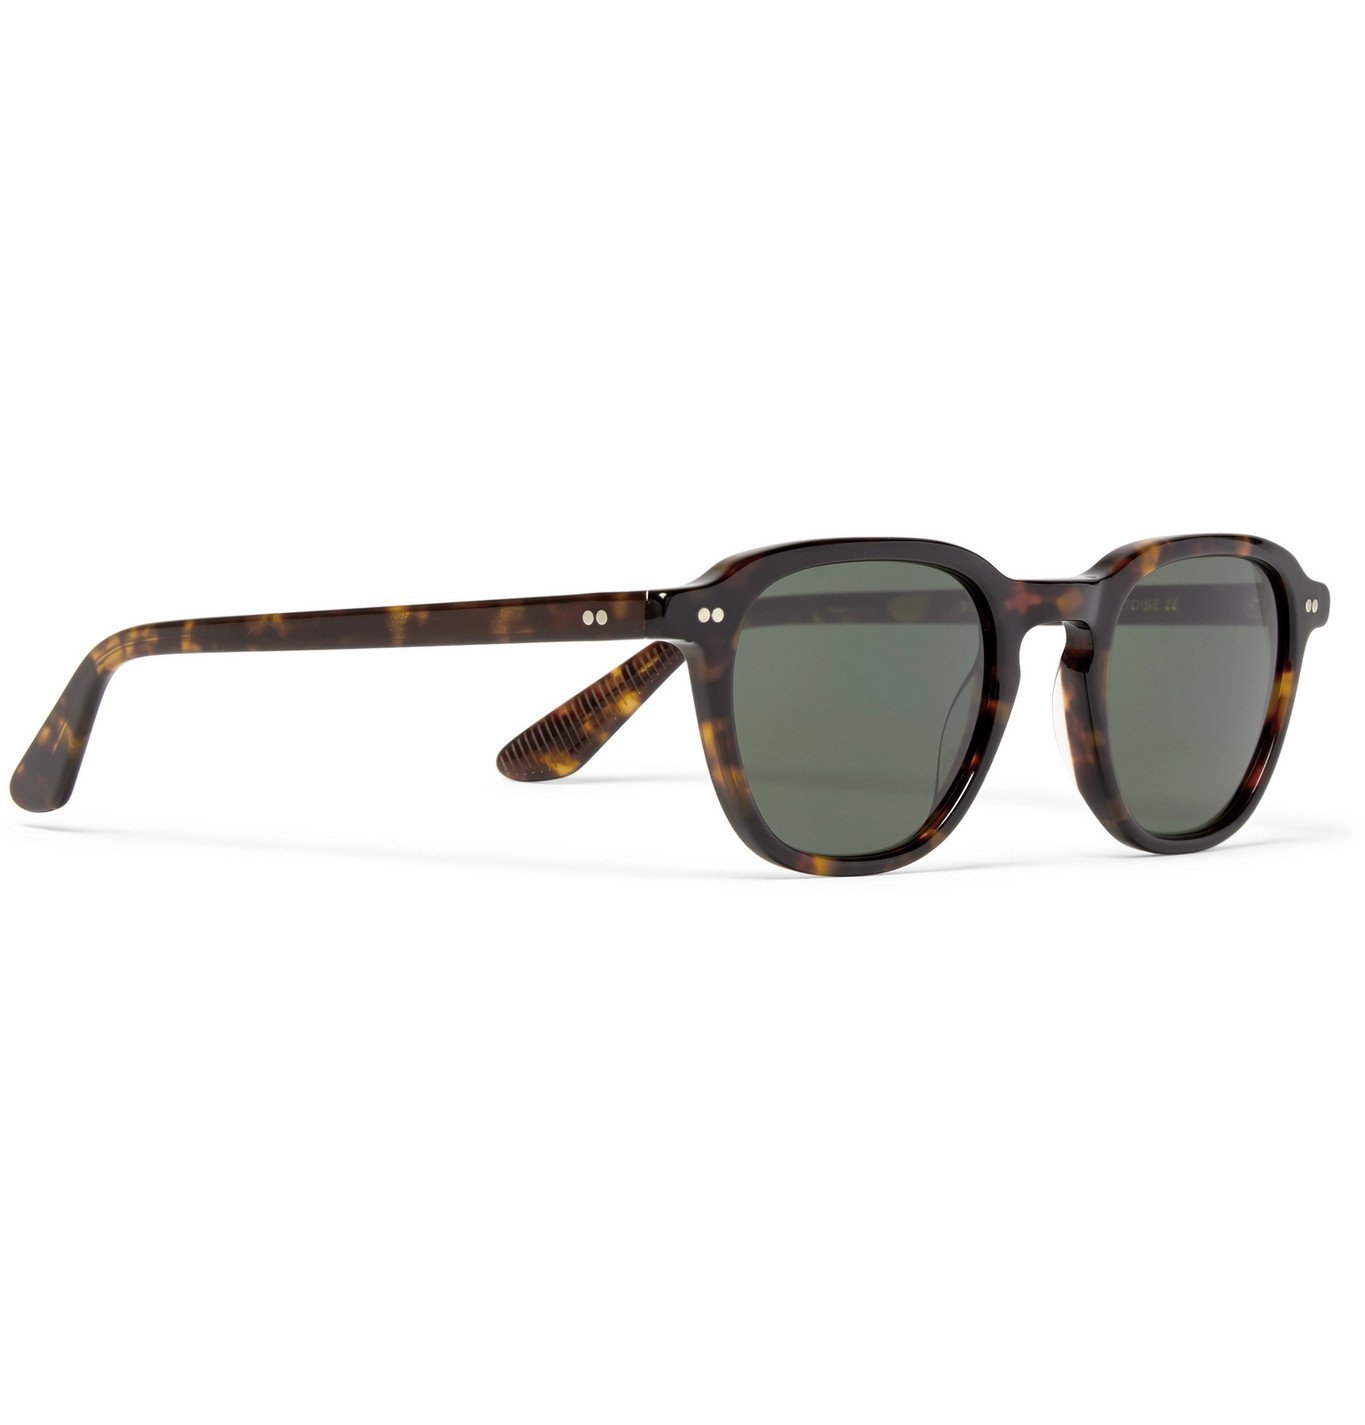 Moscot - Billik Round-Frame Acetate Sunglasses - Tortoiseshell Moscot